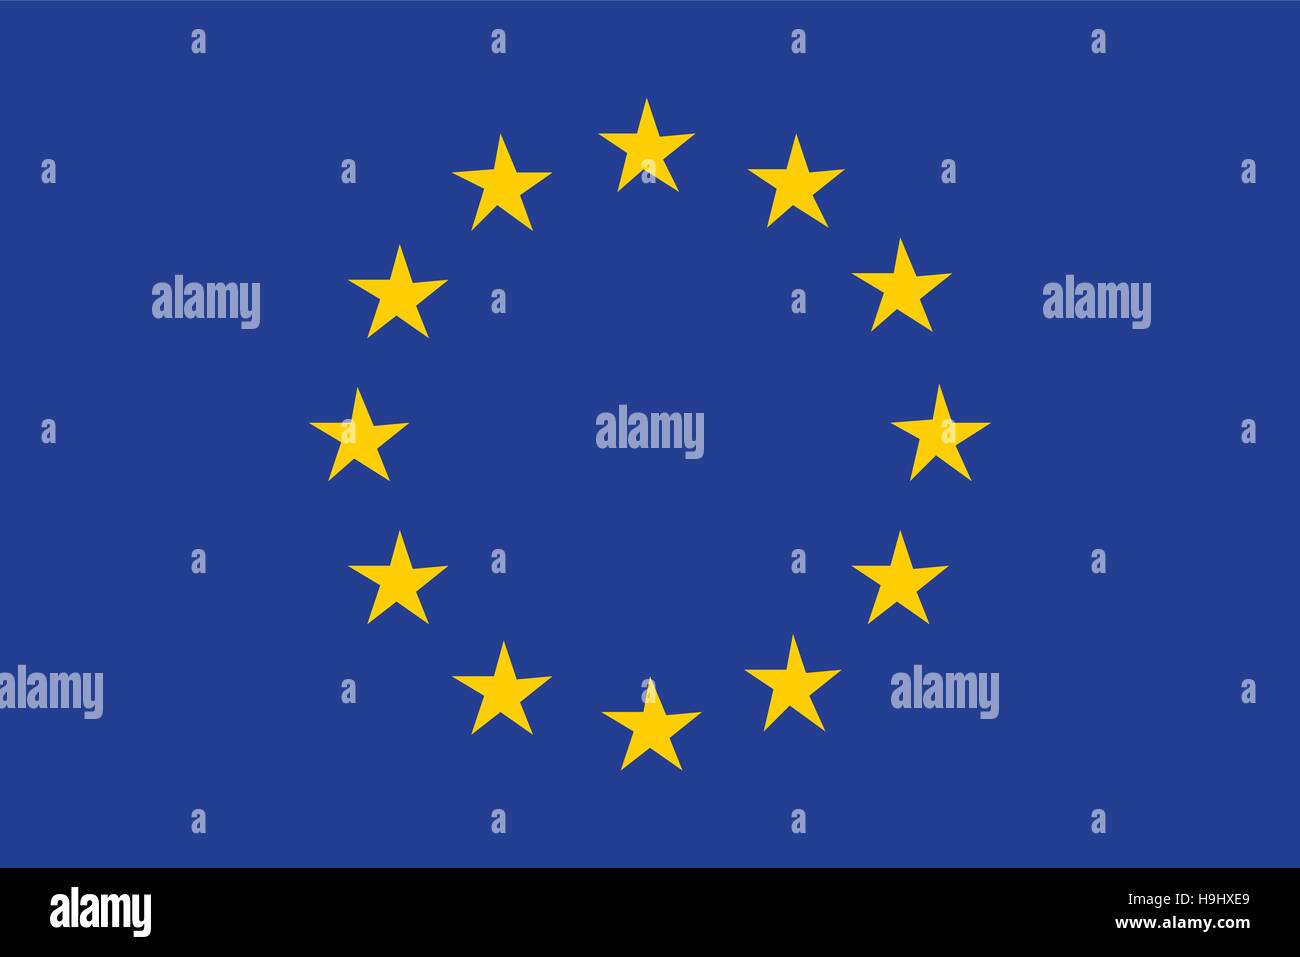 Trải nghiệm sự thống nhất và đoàn kết của Liên minh châu Âu thông qua hình ảnh về cờ đại diện của họ. Với nền xanh biểu tượng cho sự yên bình và sự đổi mới, và những ngôi sao màu vàng đại diện cho sức mạnh và sự phát triển, hình ảnh này sẽ cho bạn cảm giác khá vui mừng.